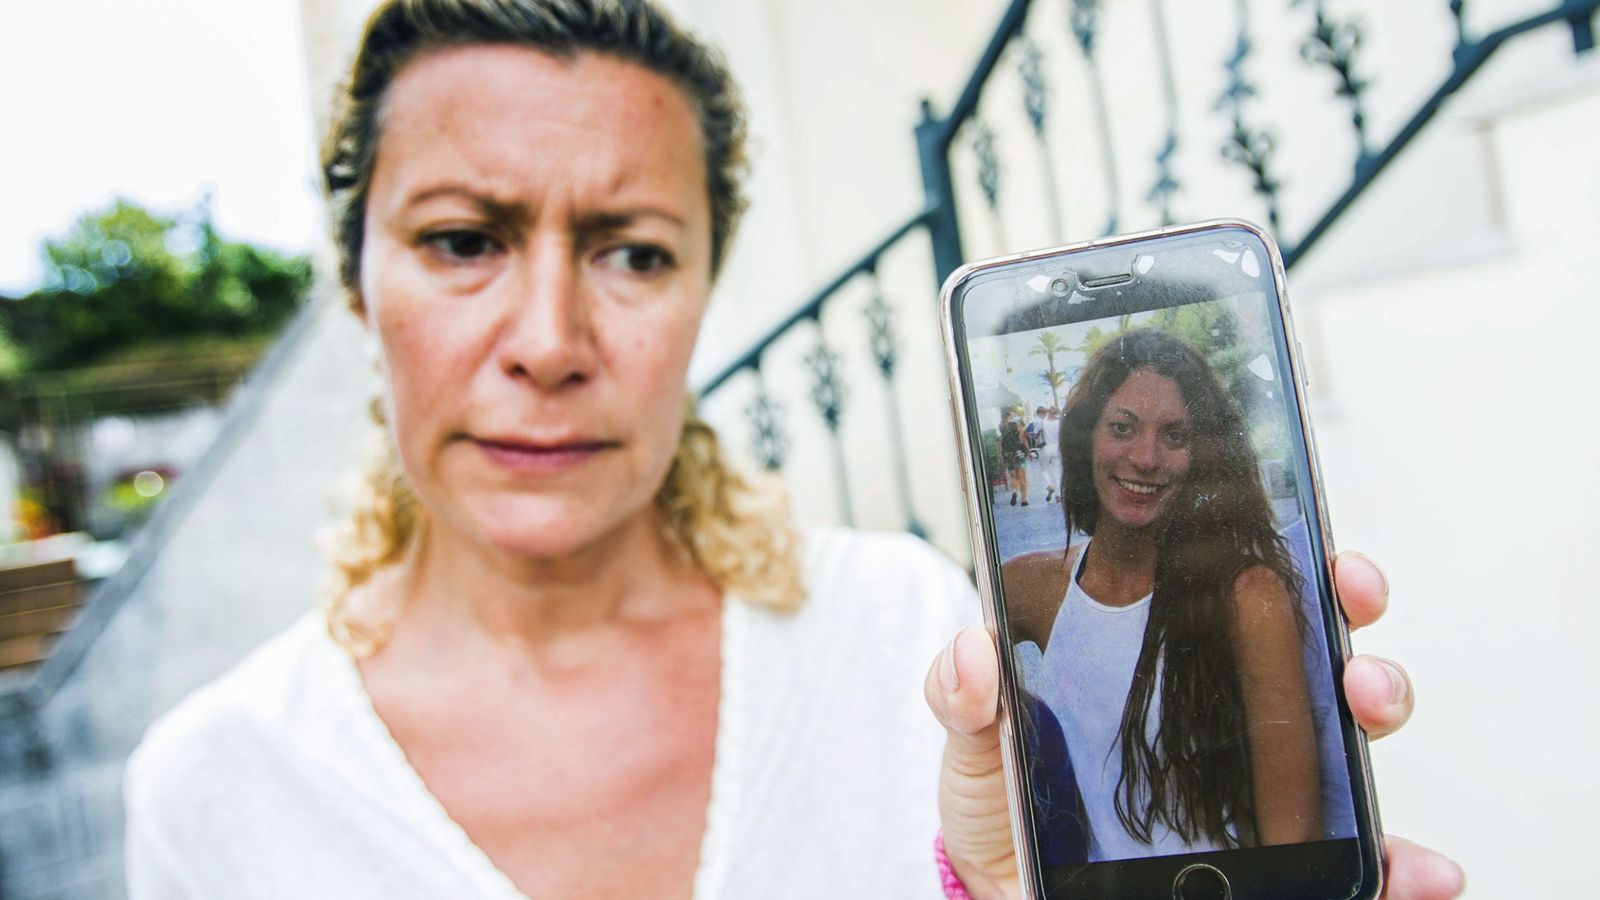 Foto: Diana López-Pinel, madre de Diana Quer, muestra una foto de su hija a los medios horas después de su desaparición el pasado 22 de agosto. (EFE)